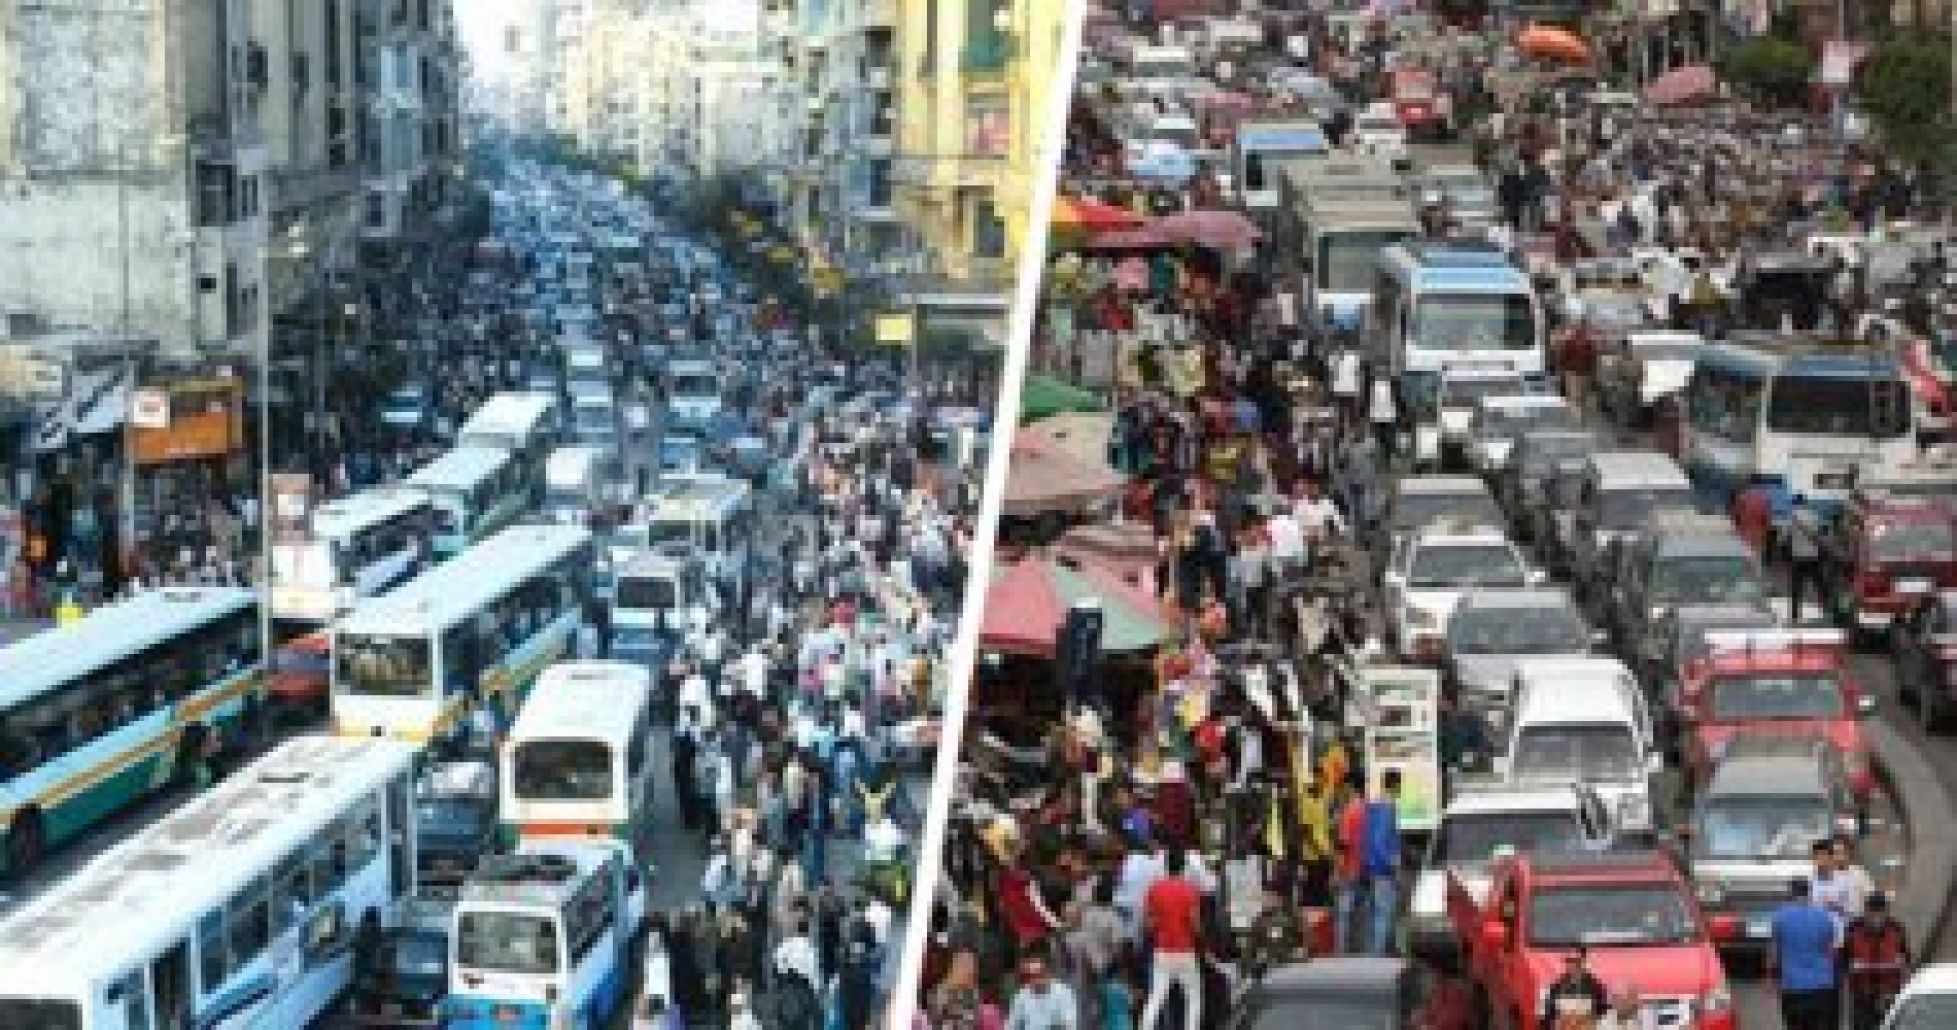 الزيادة السكانية في مصر